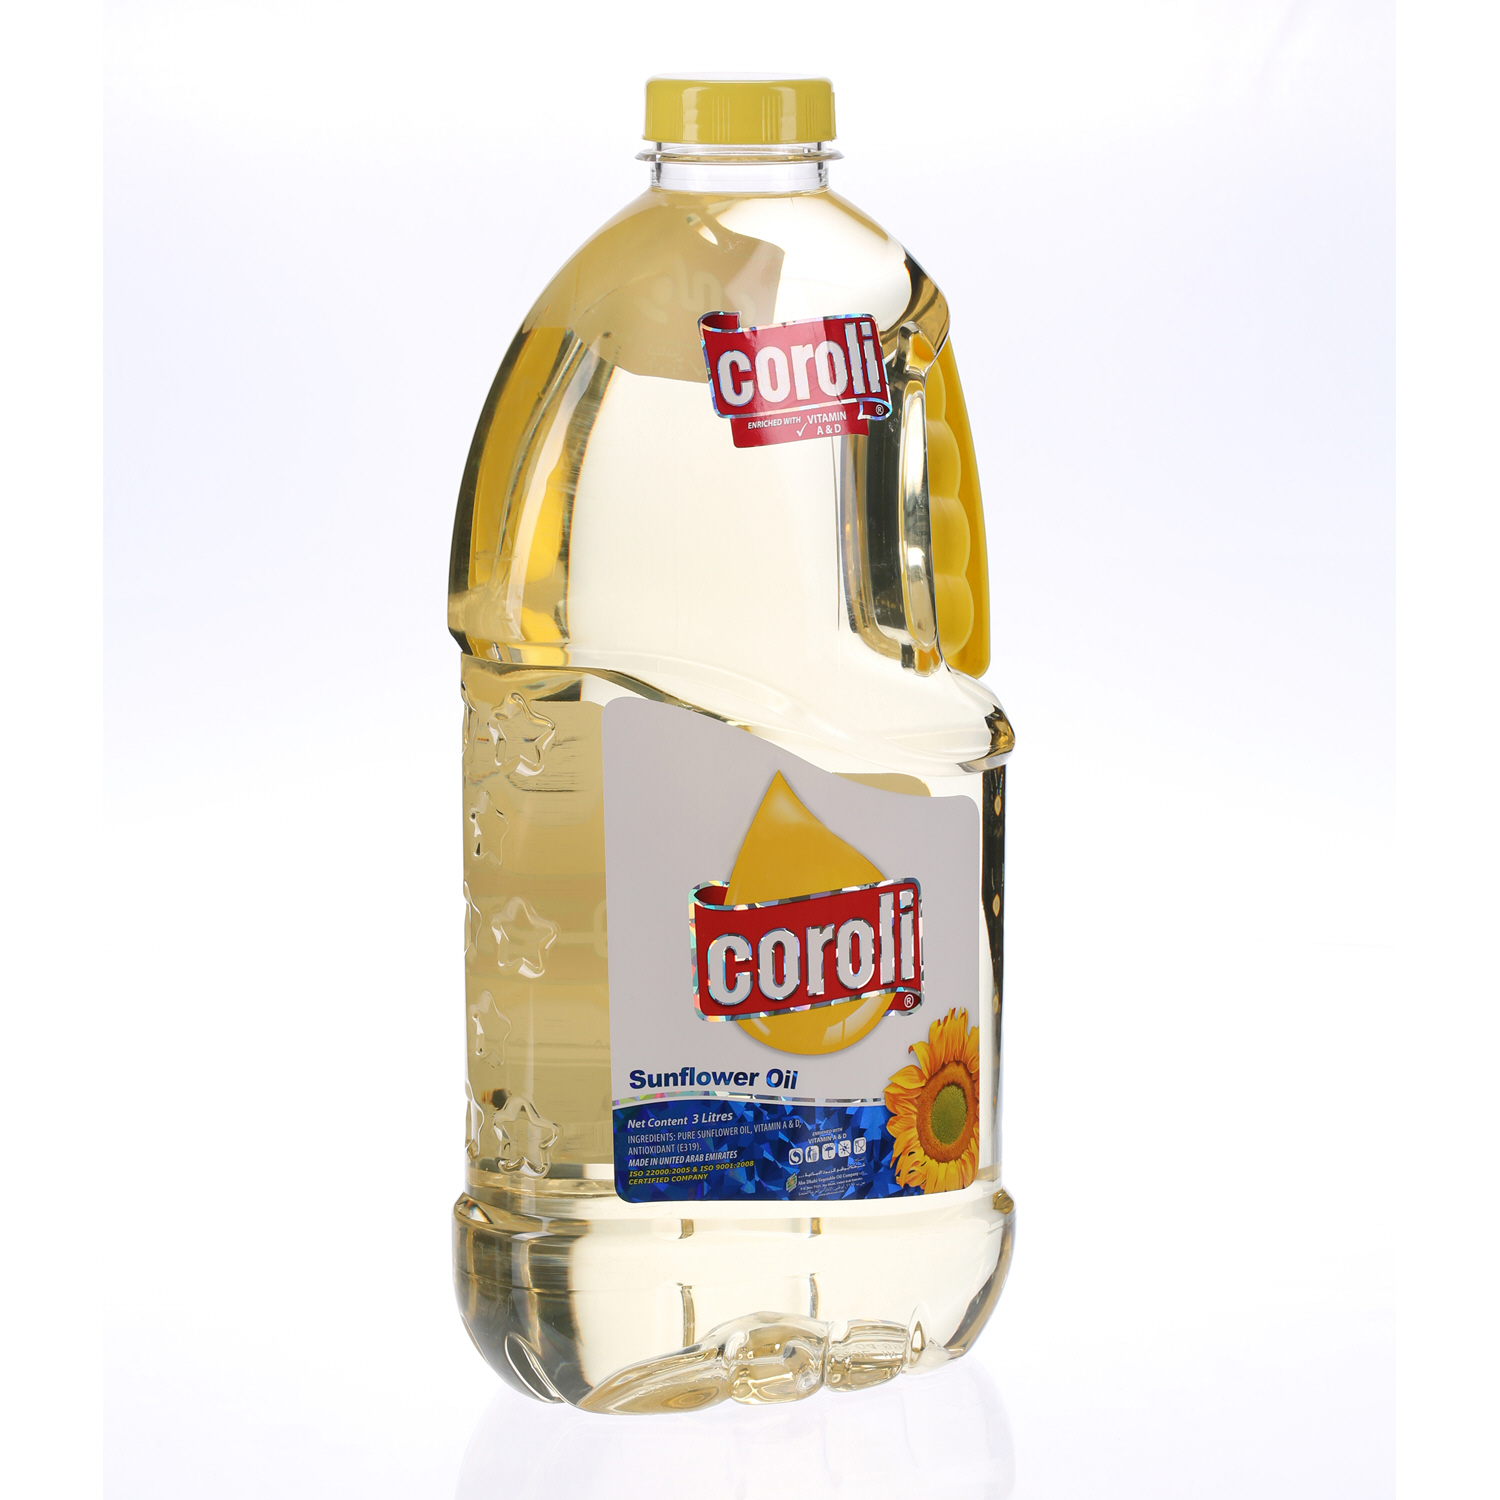 Coroli Sunflower Oil Plastic Bottle 3.45 L